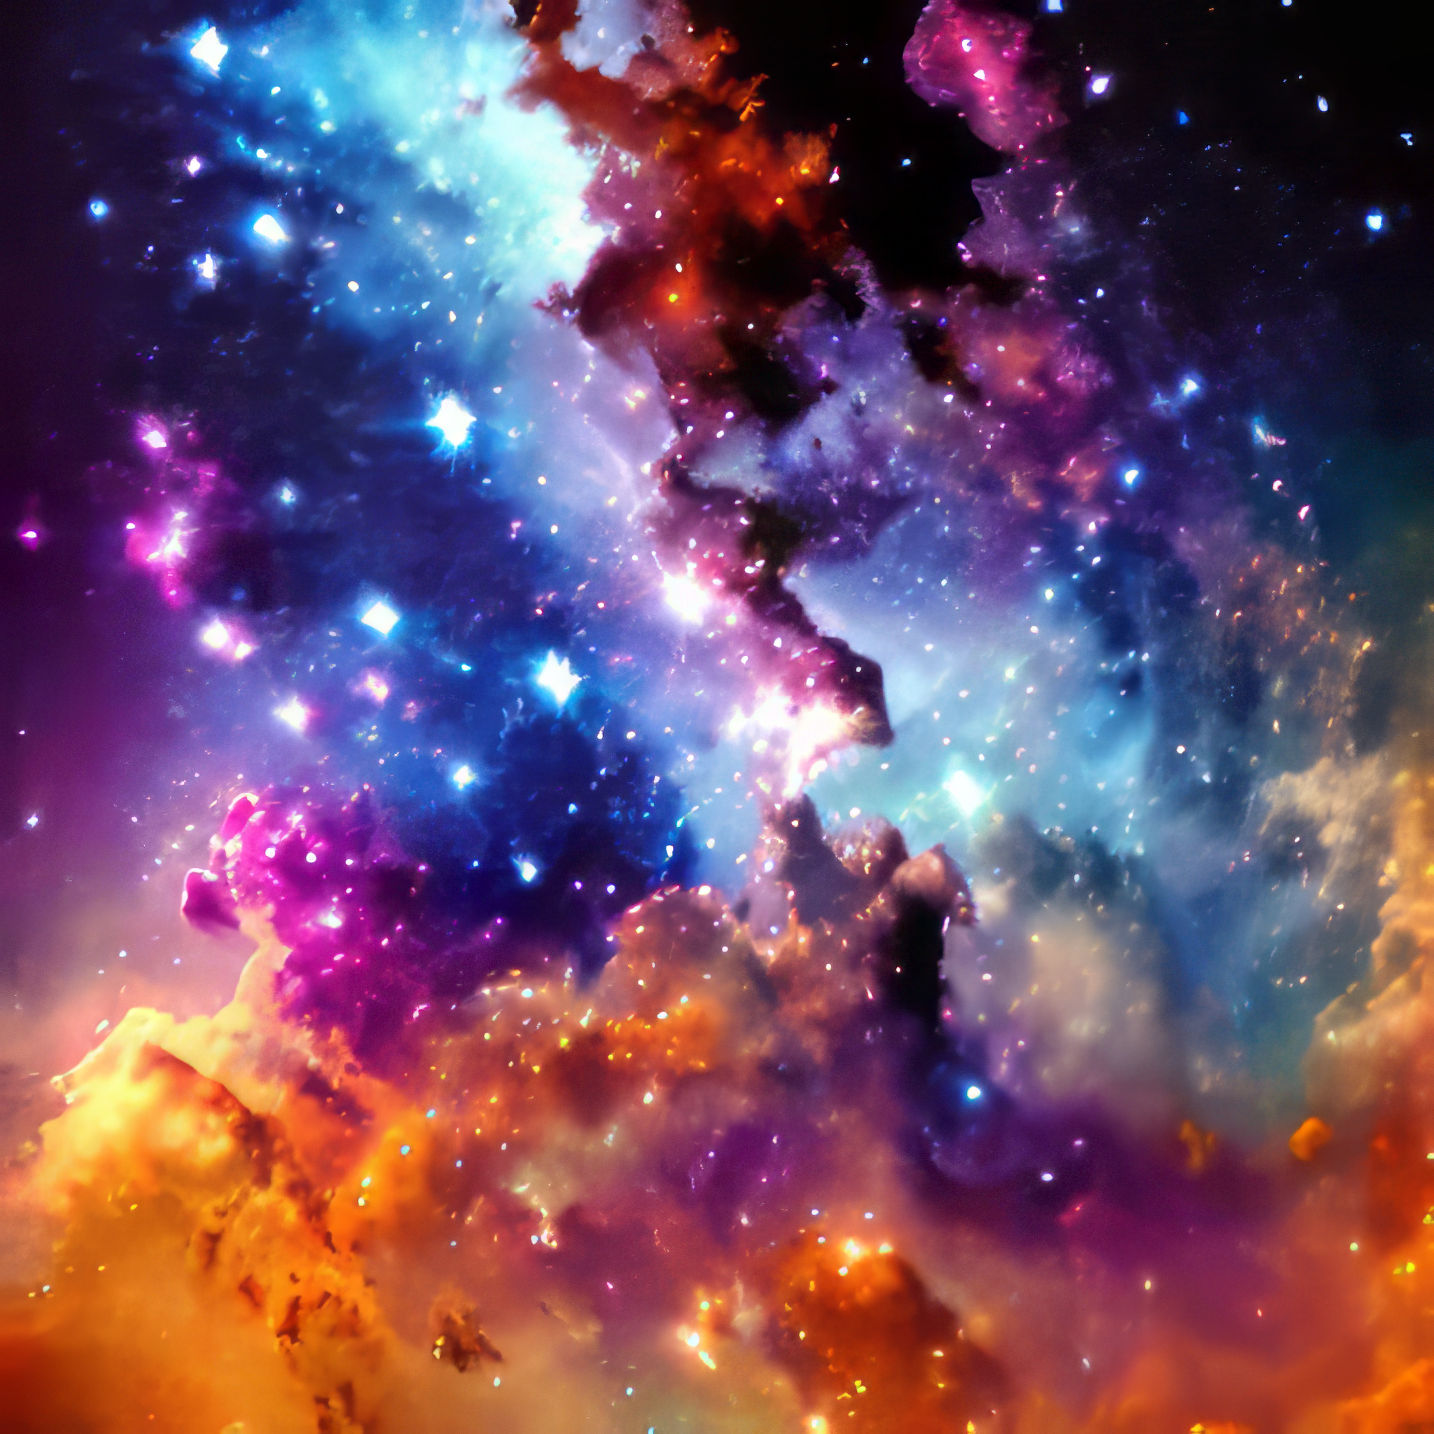 煌めく美しい夜空の星々とカラフルな銀河と雲の幻想的で神秘的な癒しの風景の無料画像素材